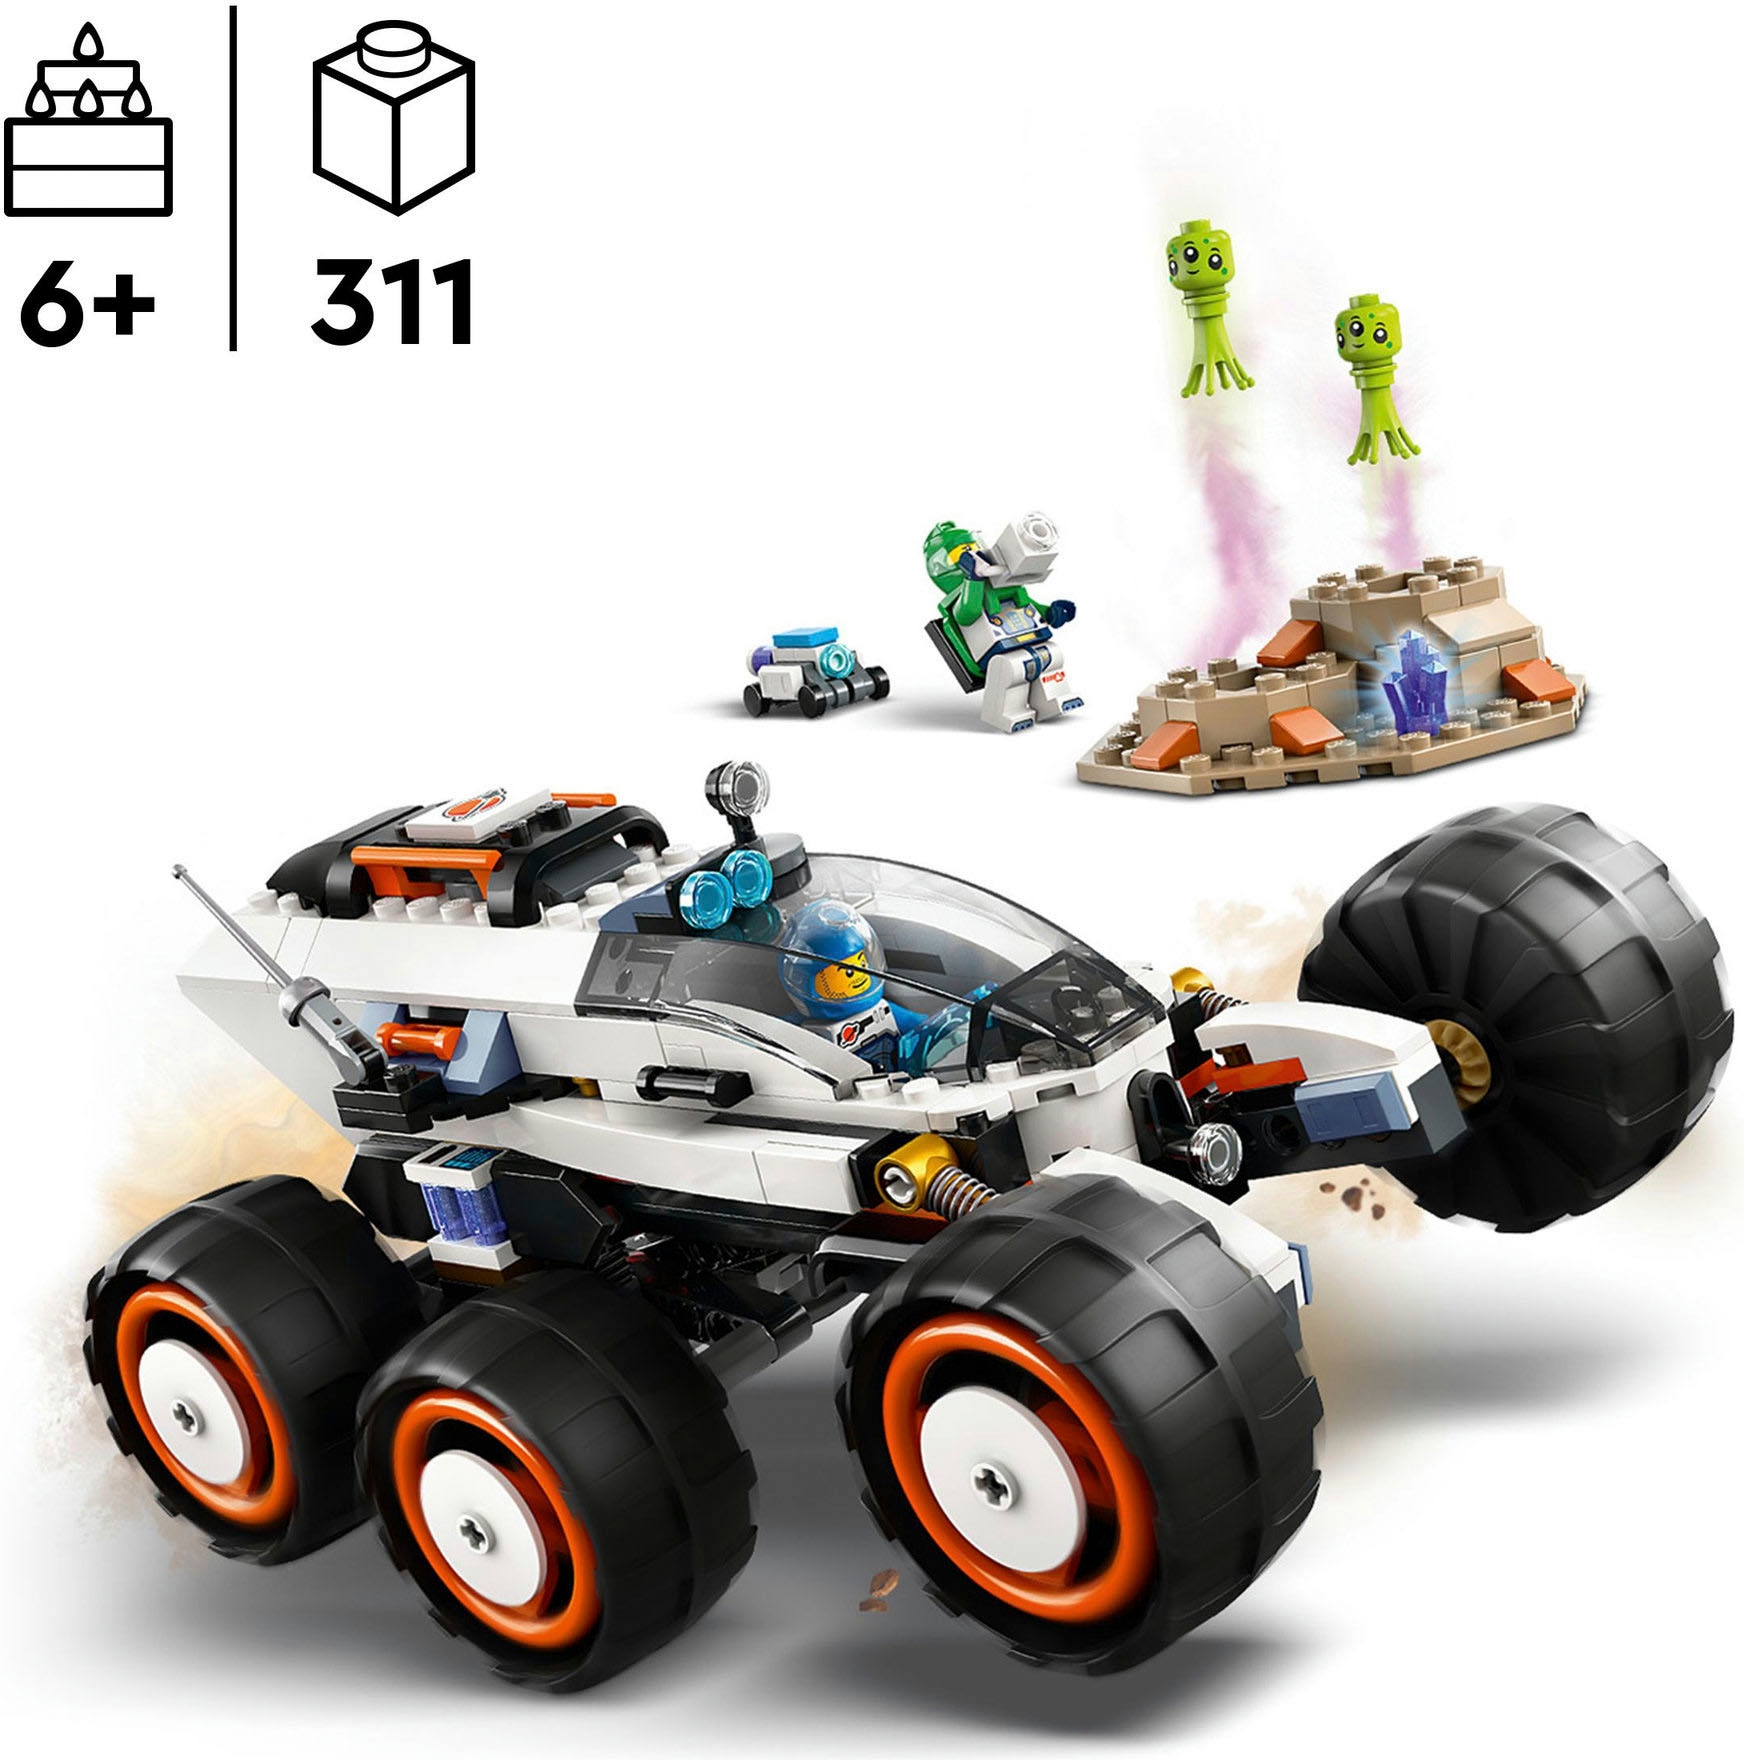 LEGO® Konstruktionsspielsteine »Weltraum-Rover mit Außerirdischen (60431), LEGO City«, (311 St.), Made in Europe